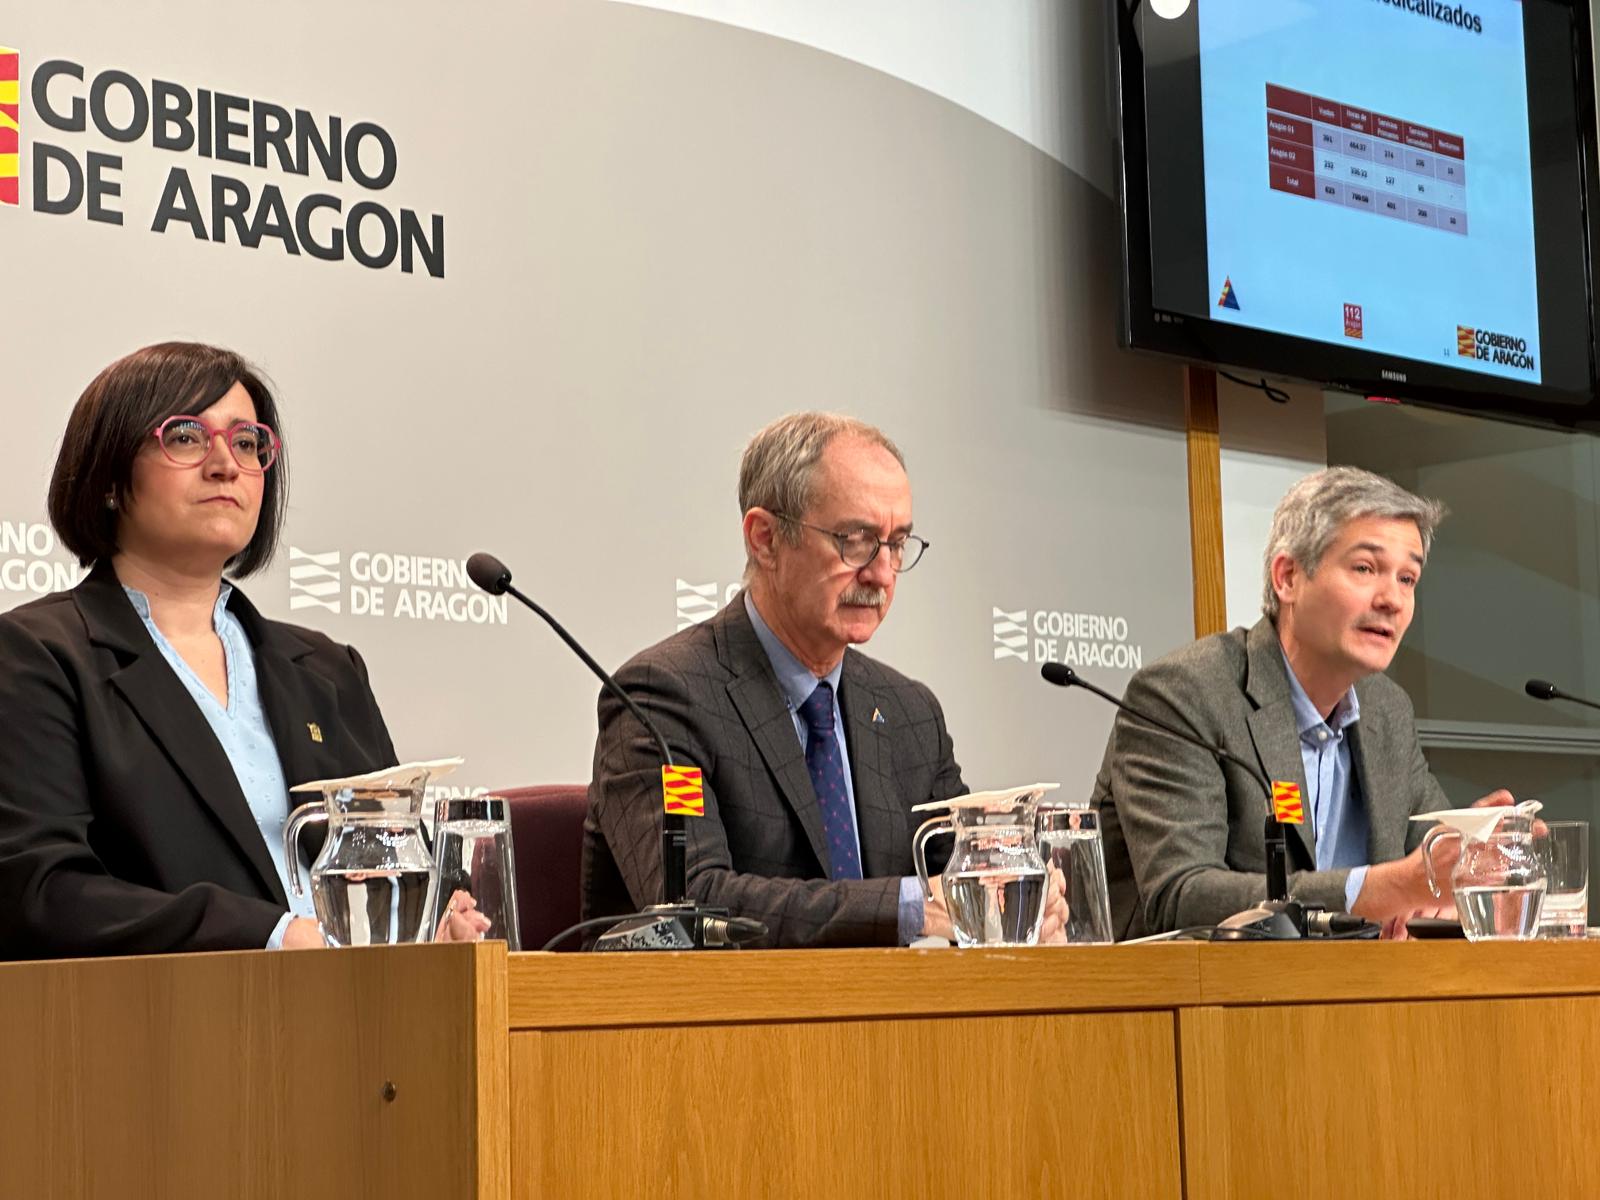 El 112 Aragón gestionó en 2023 más de 88.500 incidentes, el valor más alto en sus 26 años de historia